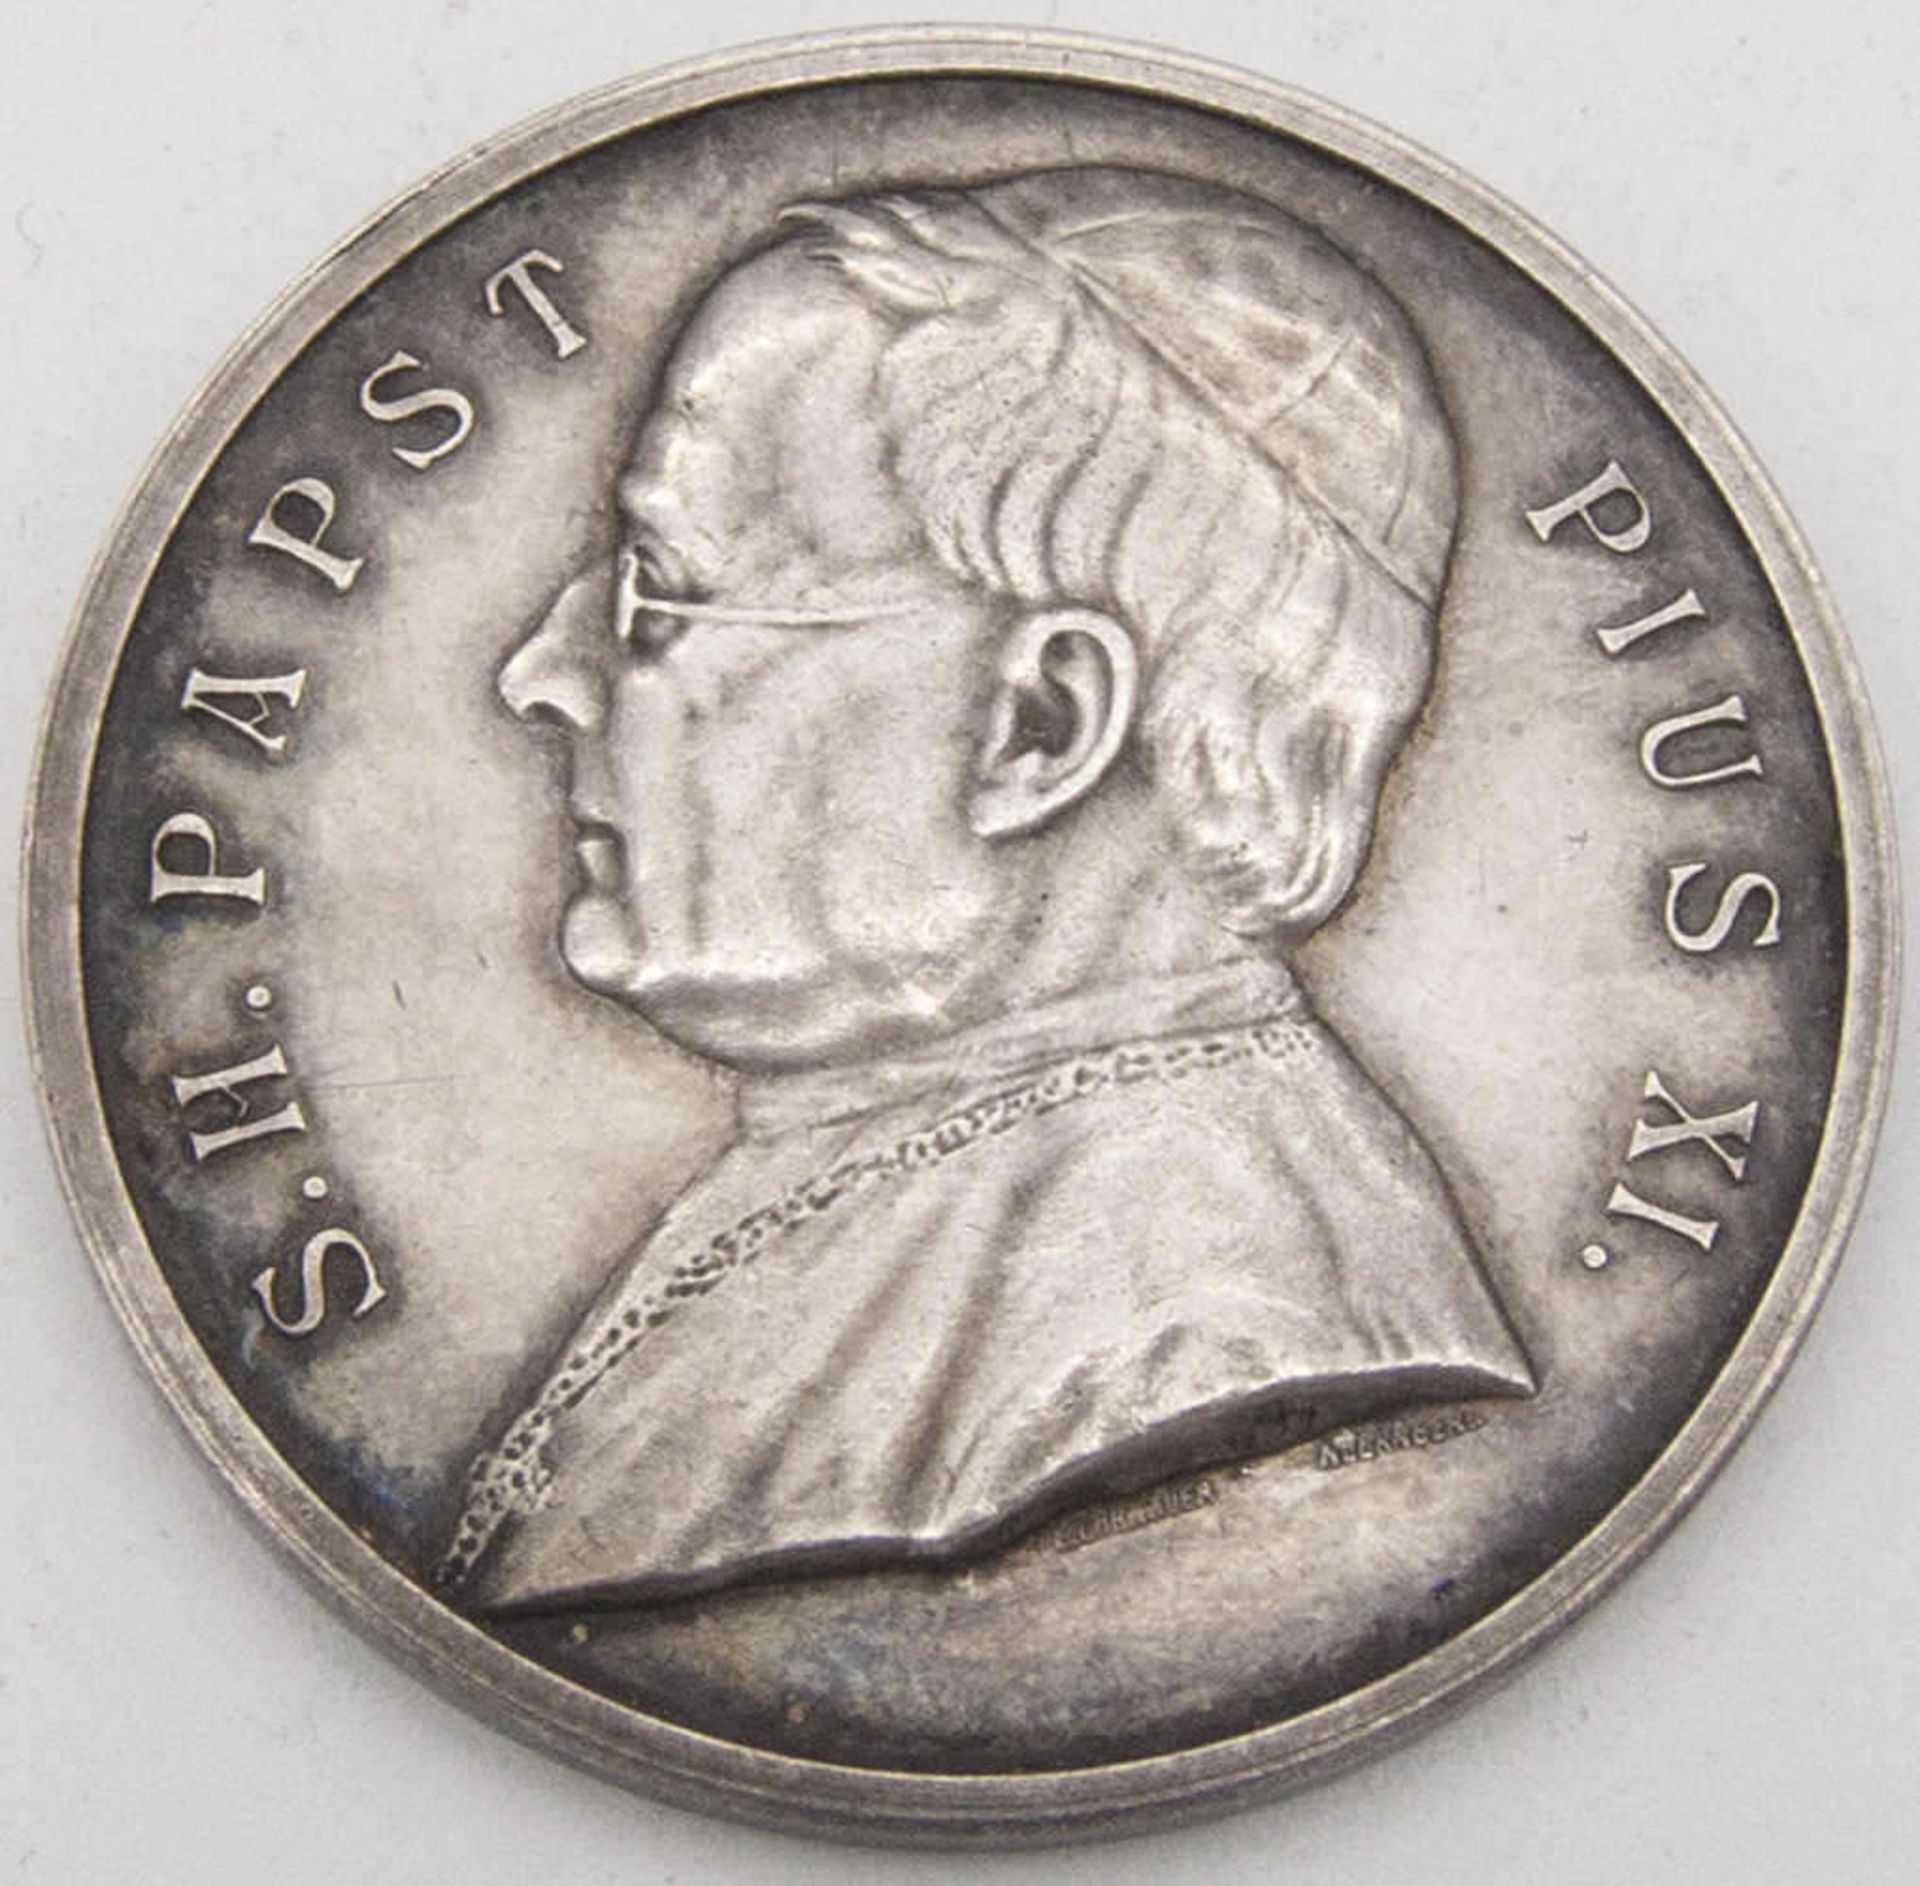 Erinnerungs - Medaille zur Pilgerfahrt nach Rom 1925. Silber 990. Papst Pius XI:. Durchmesser: ca.